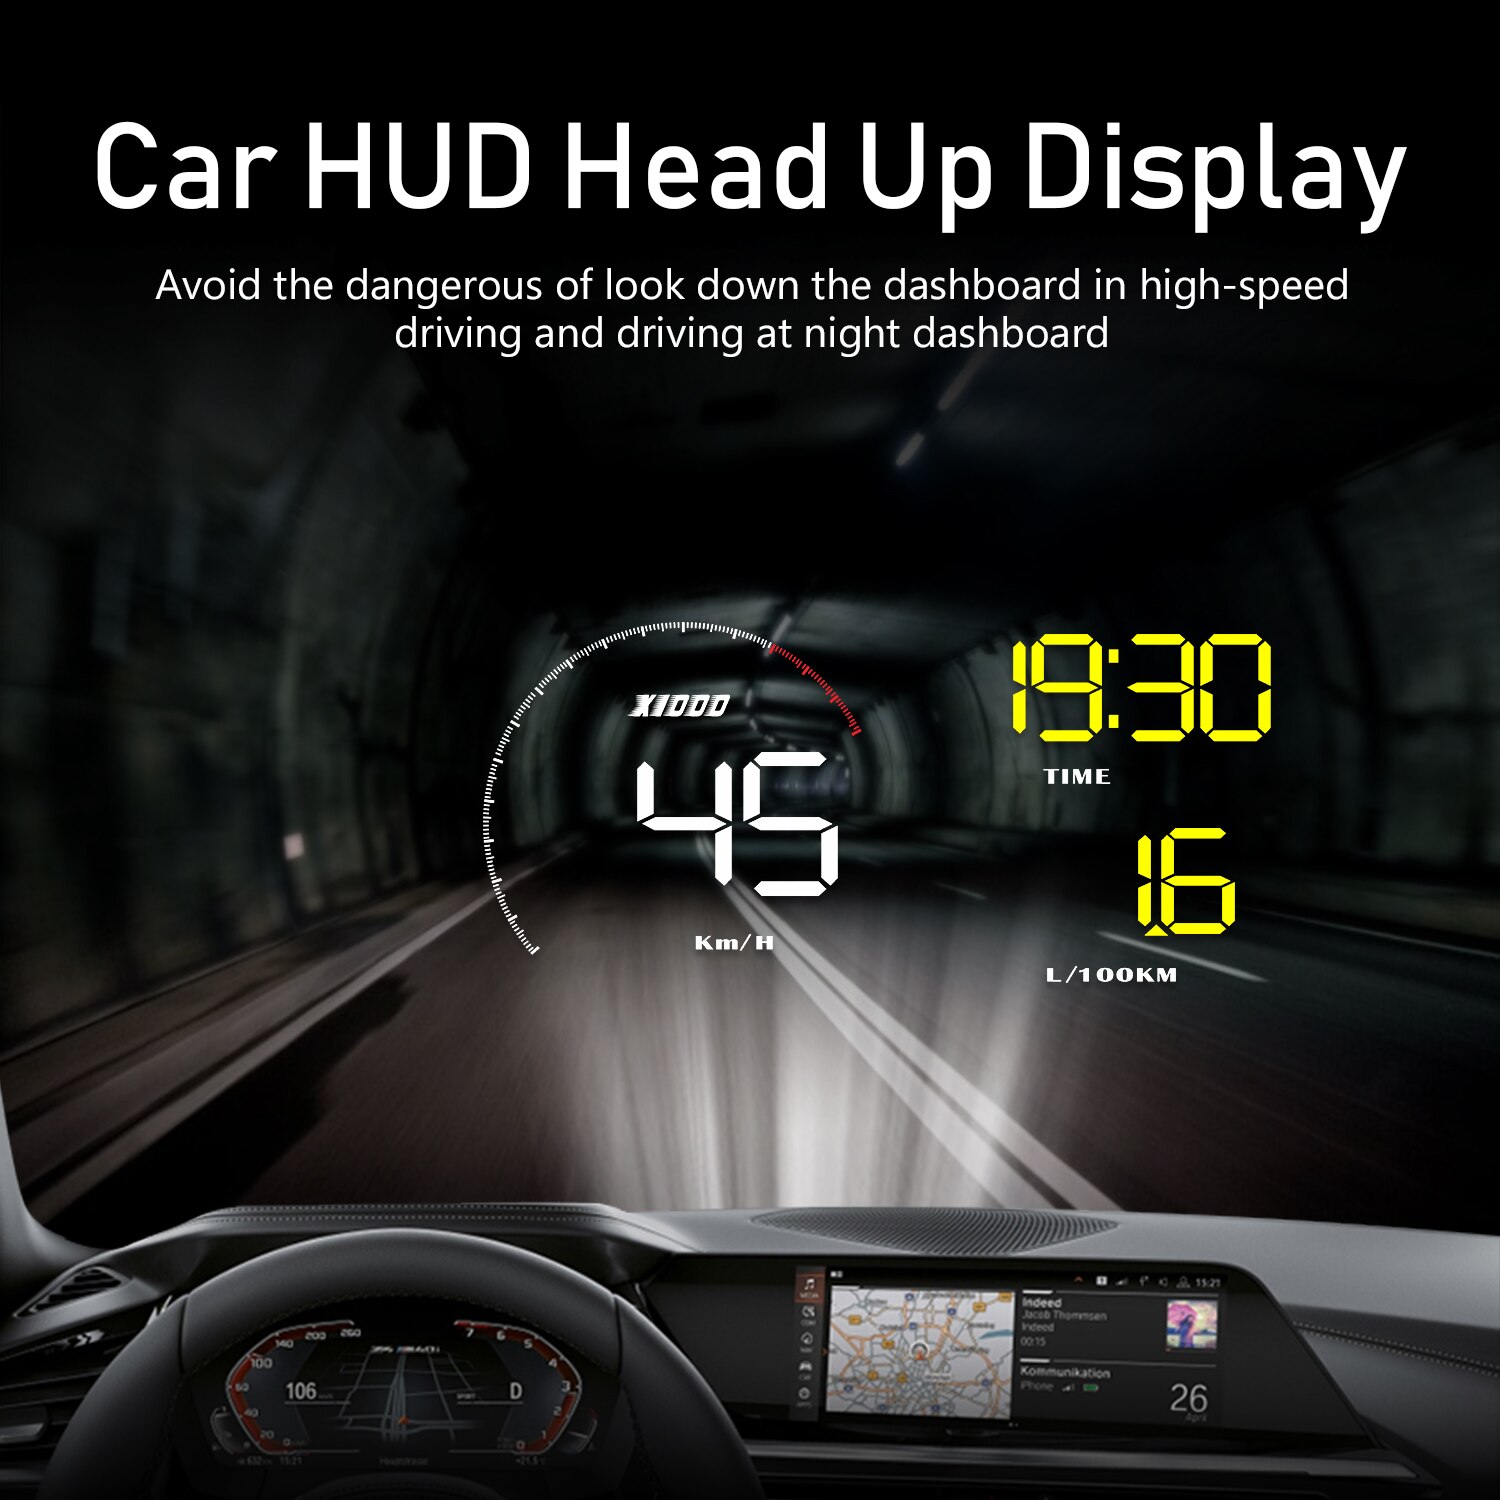 A9 med objektivskærm forrude projektor obd 2 ii euobd bil hud head up display overhastighed advarselssystem spændingsalarm dfdf